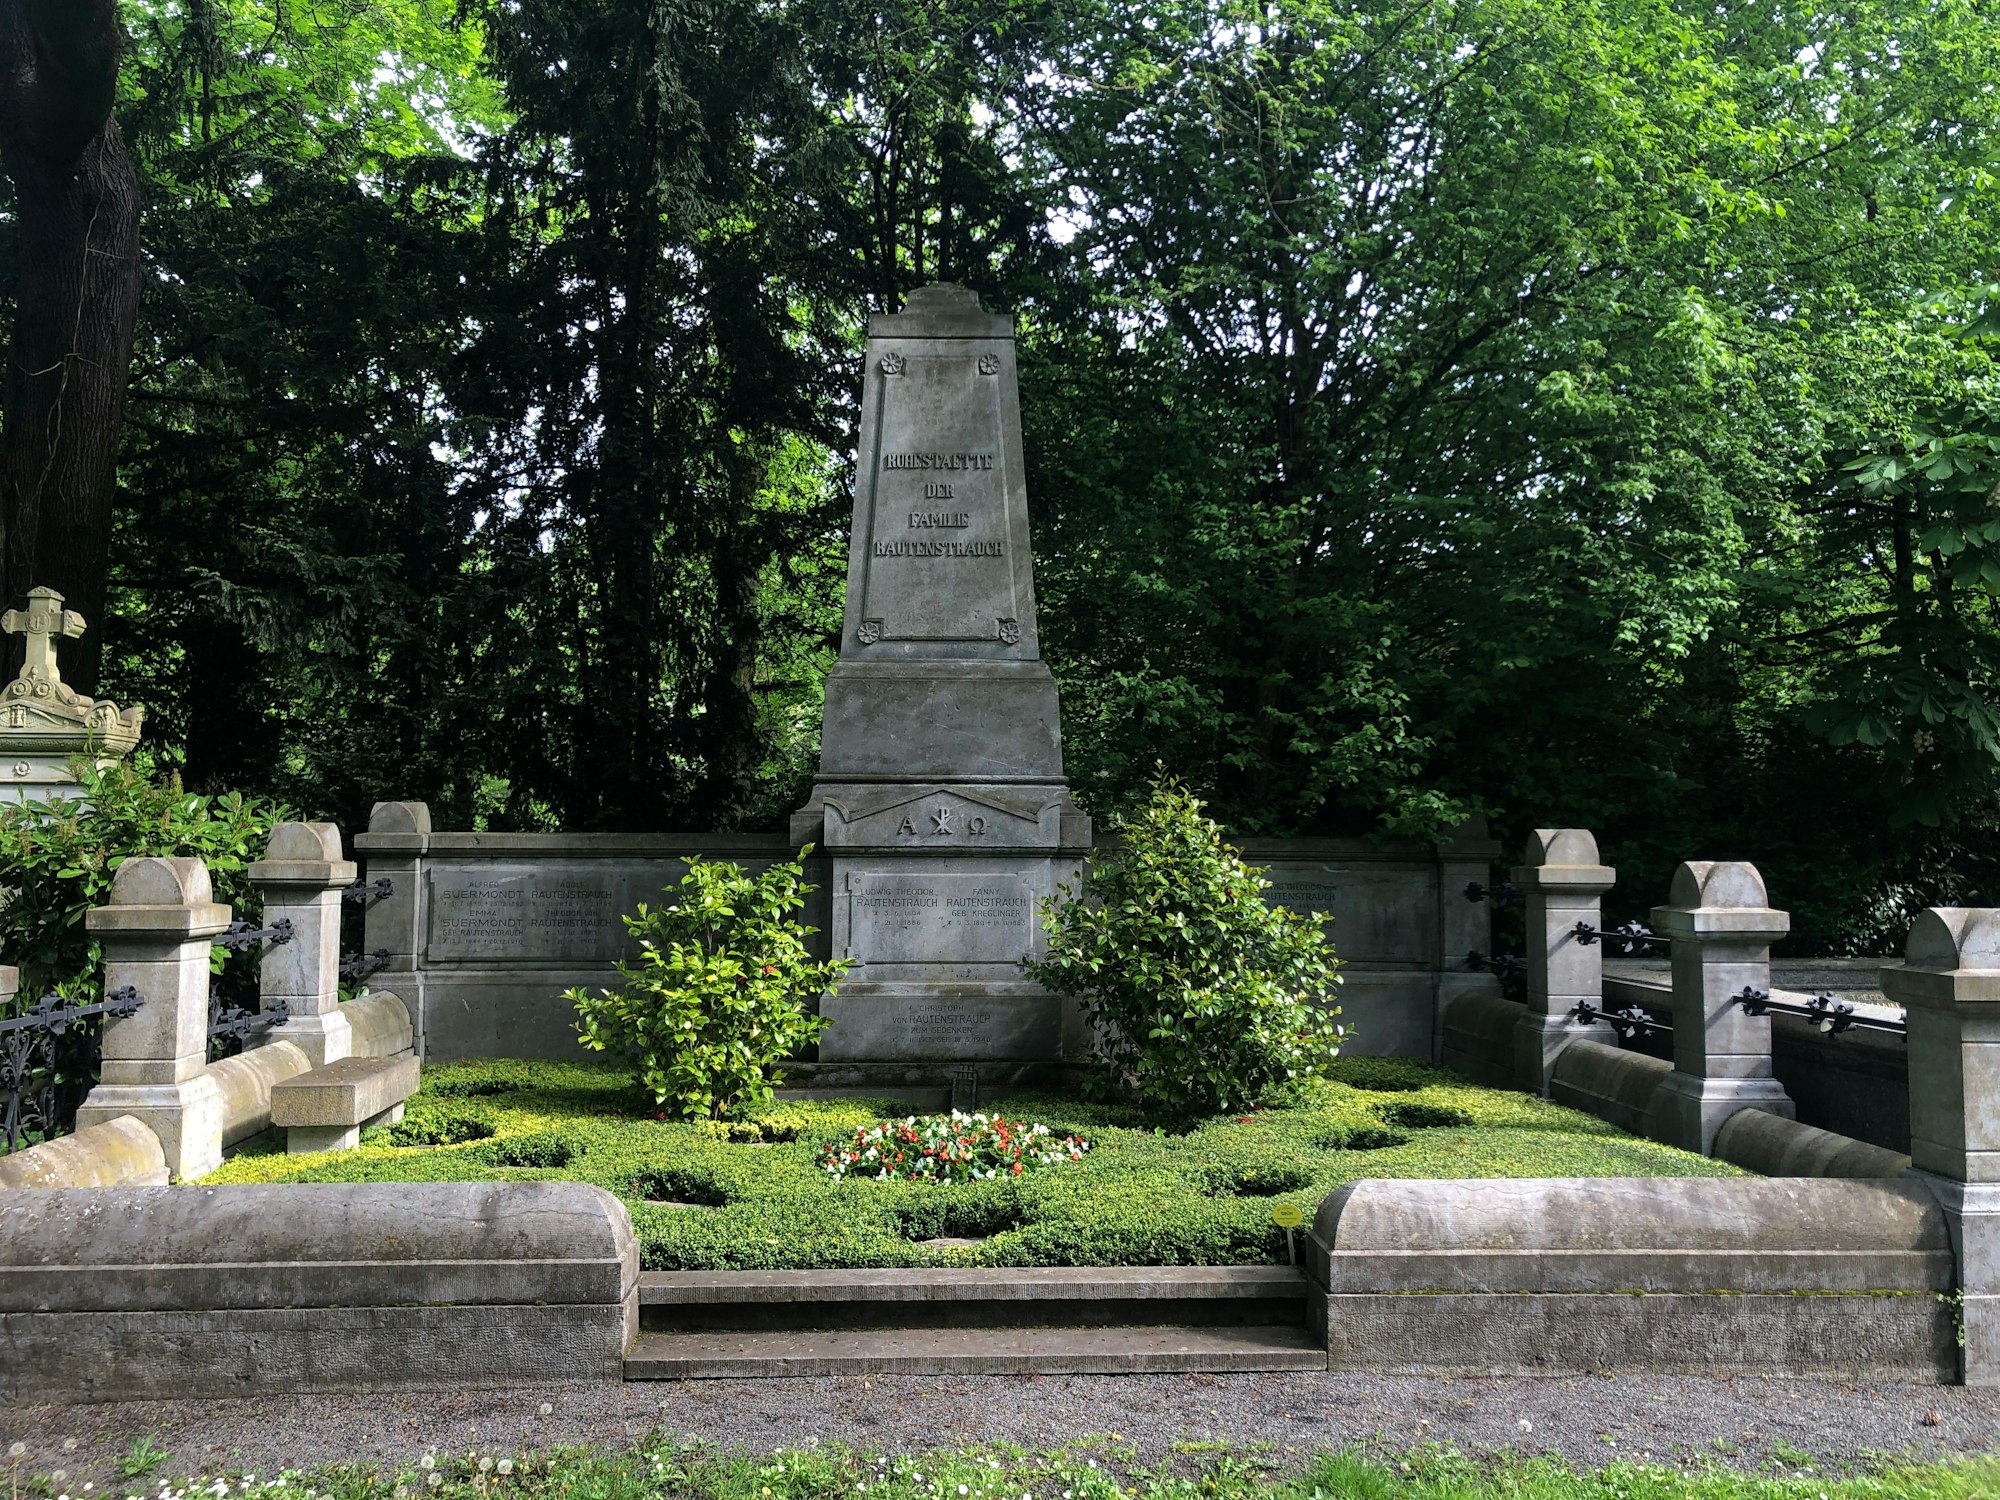 Anna Maria Adele Rautenstrauch ist im Dezember 1903 inMecklenburg verstorben, anschließend wurde sie nach Köln überführt und auf dem Friedhof Melaten auf der sogenannten Millionenalleebegraben.